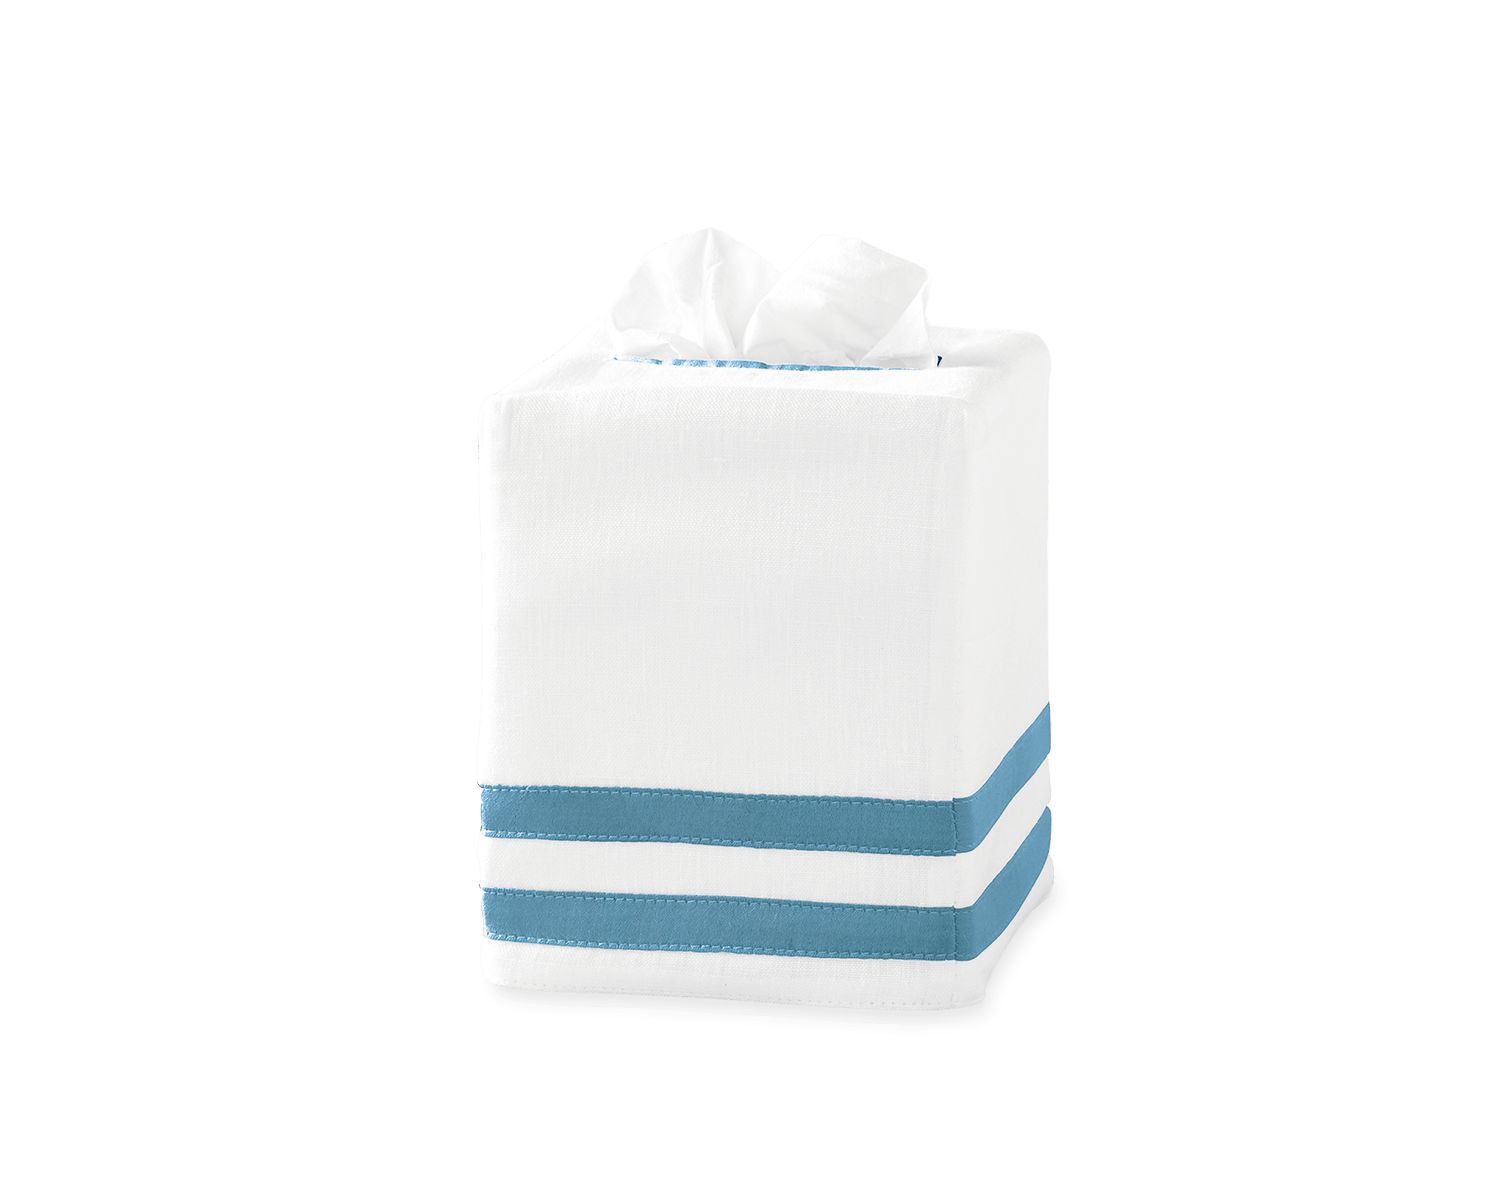 Allegro Tissue Box Cover